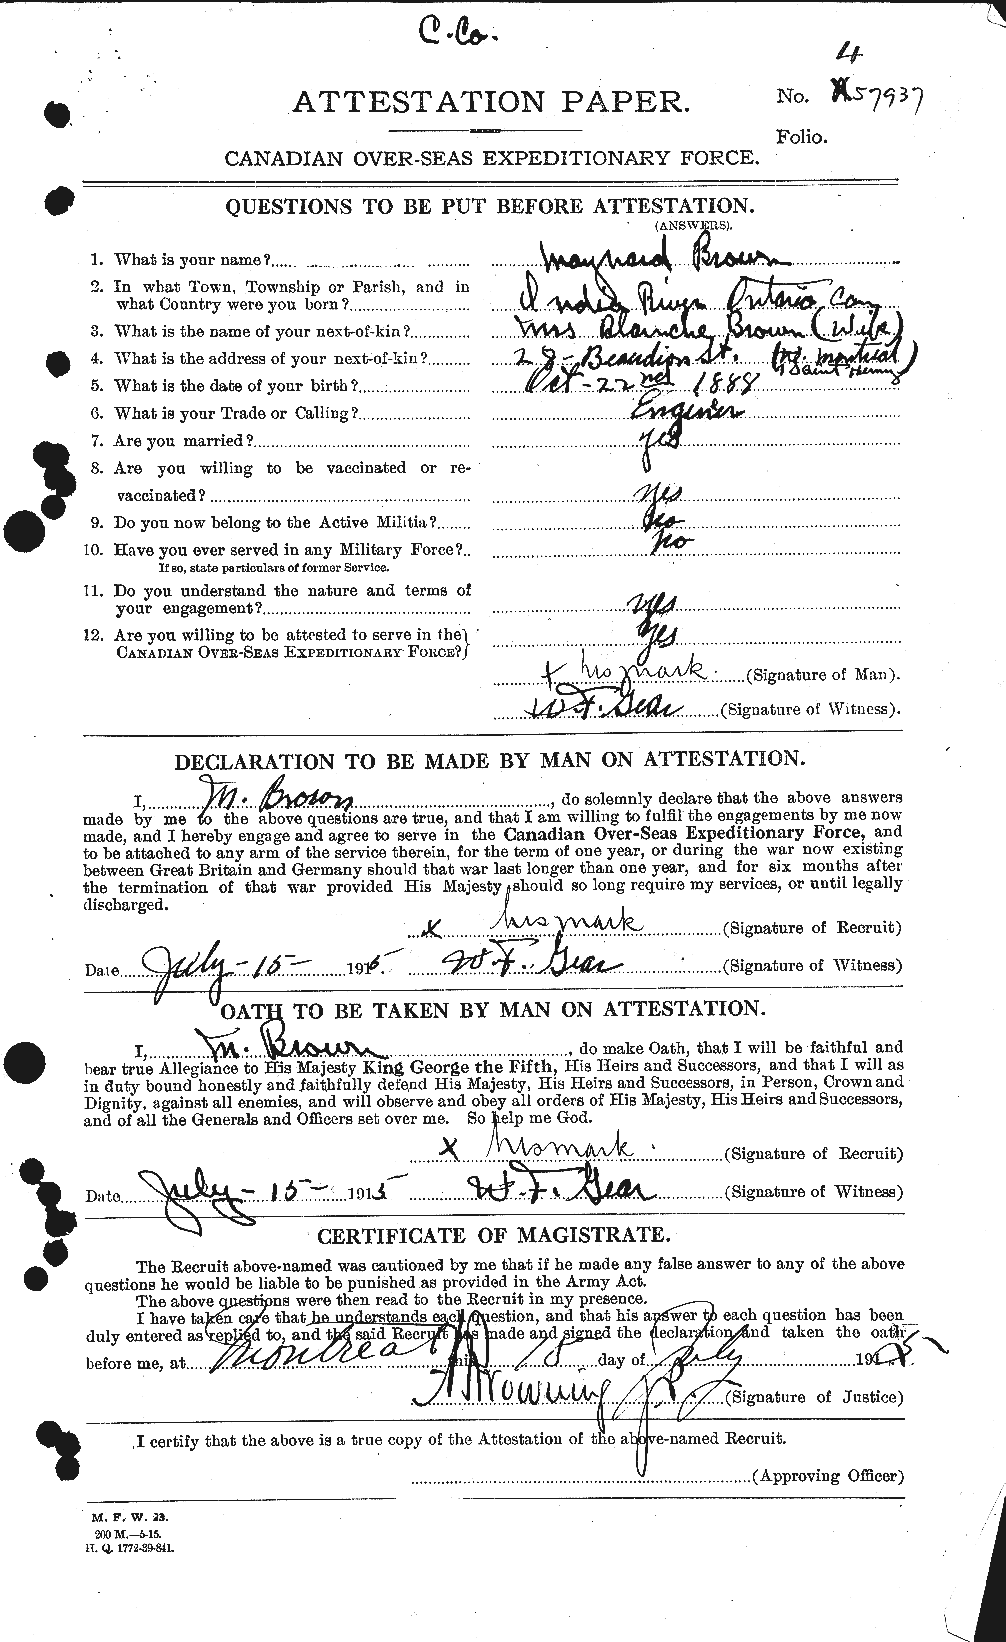 Dossiers du Personnel de la Première Guerre mondiale - CEC 267048a